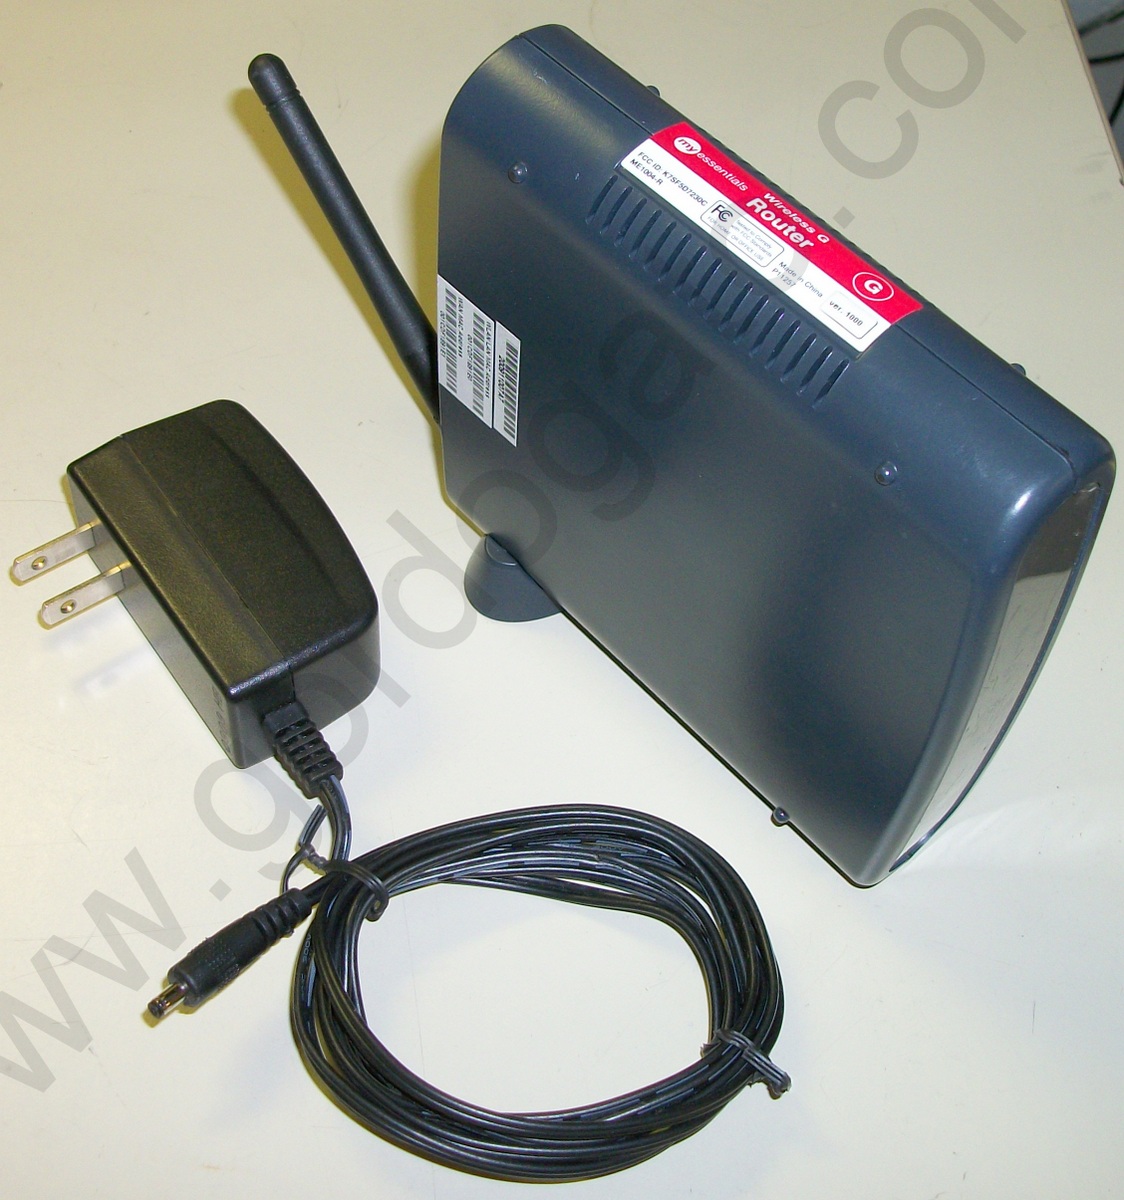 My Essentials Belkin Wireless G Router 10/100 ME1004-R